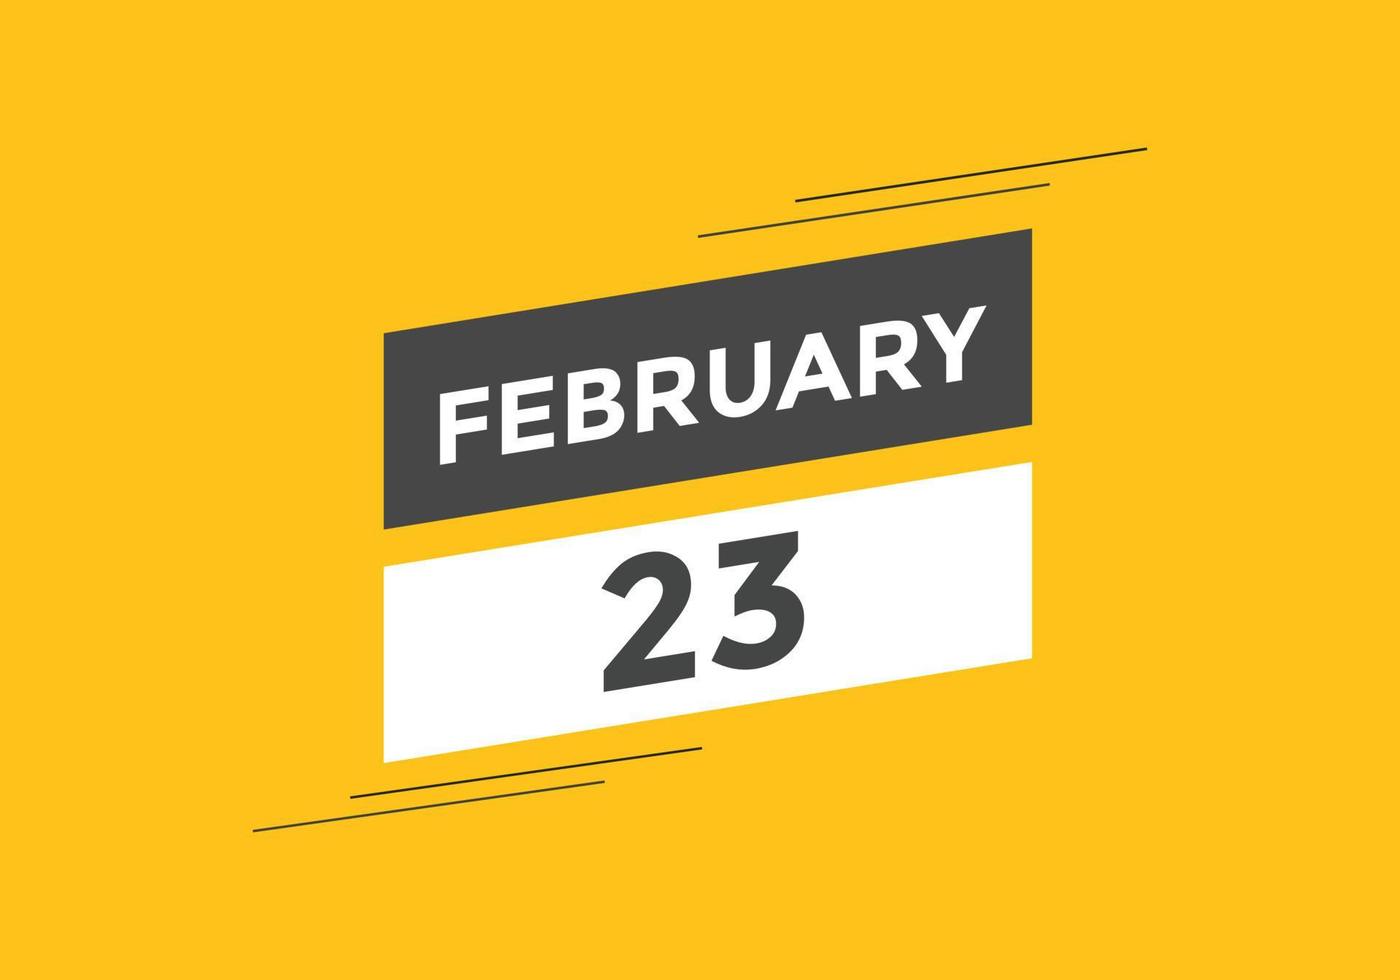 februari 23 kalender herinnering. 23e februari dagelijks kalender icoon sjabloon. kalender 23e februari icoon ontwerp sjabloon. vector illustratie